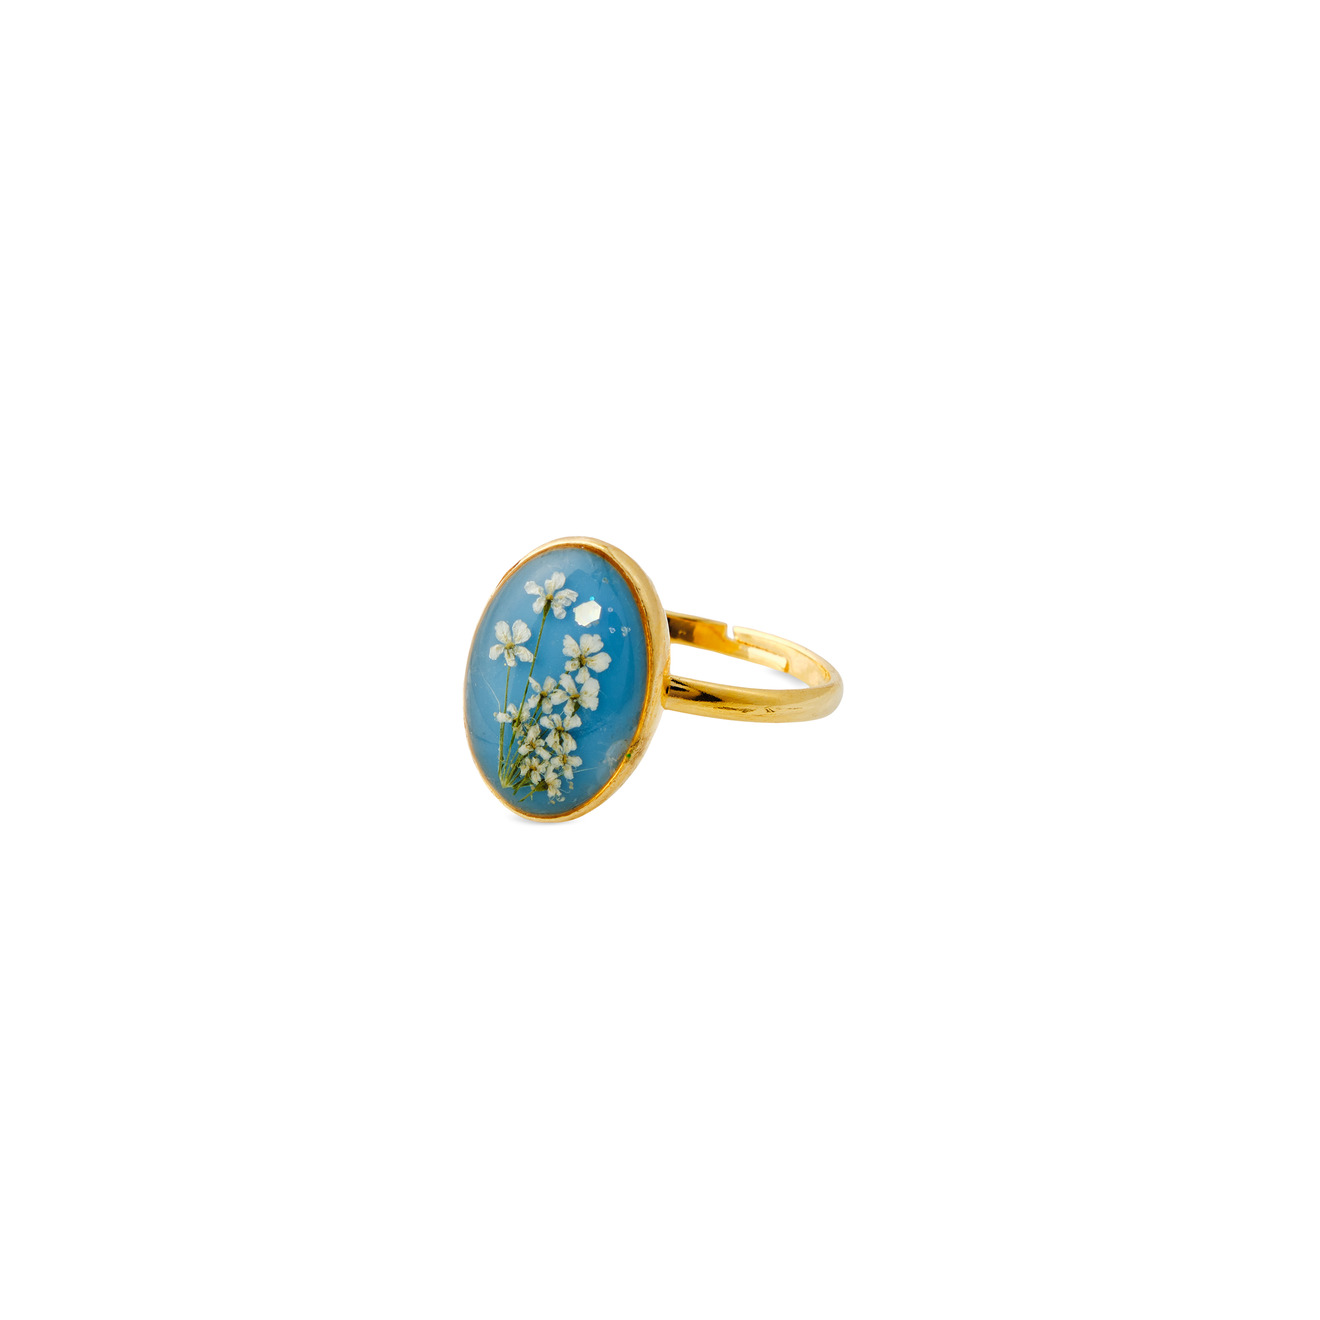 wisteria gems золотистое колье с натуральным жемчугом и зелеными бусинами Wisteria Gems Золотистое овальное голубое кольцо с белыми цветками